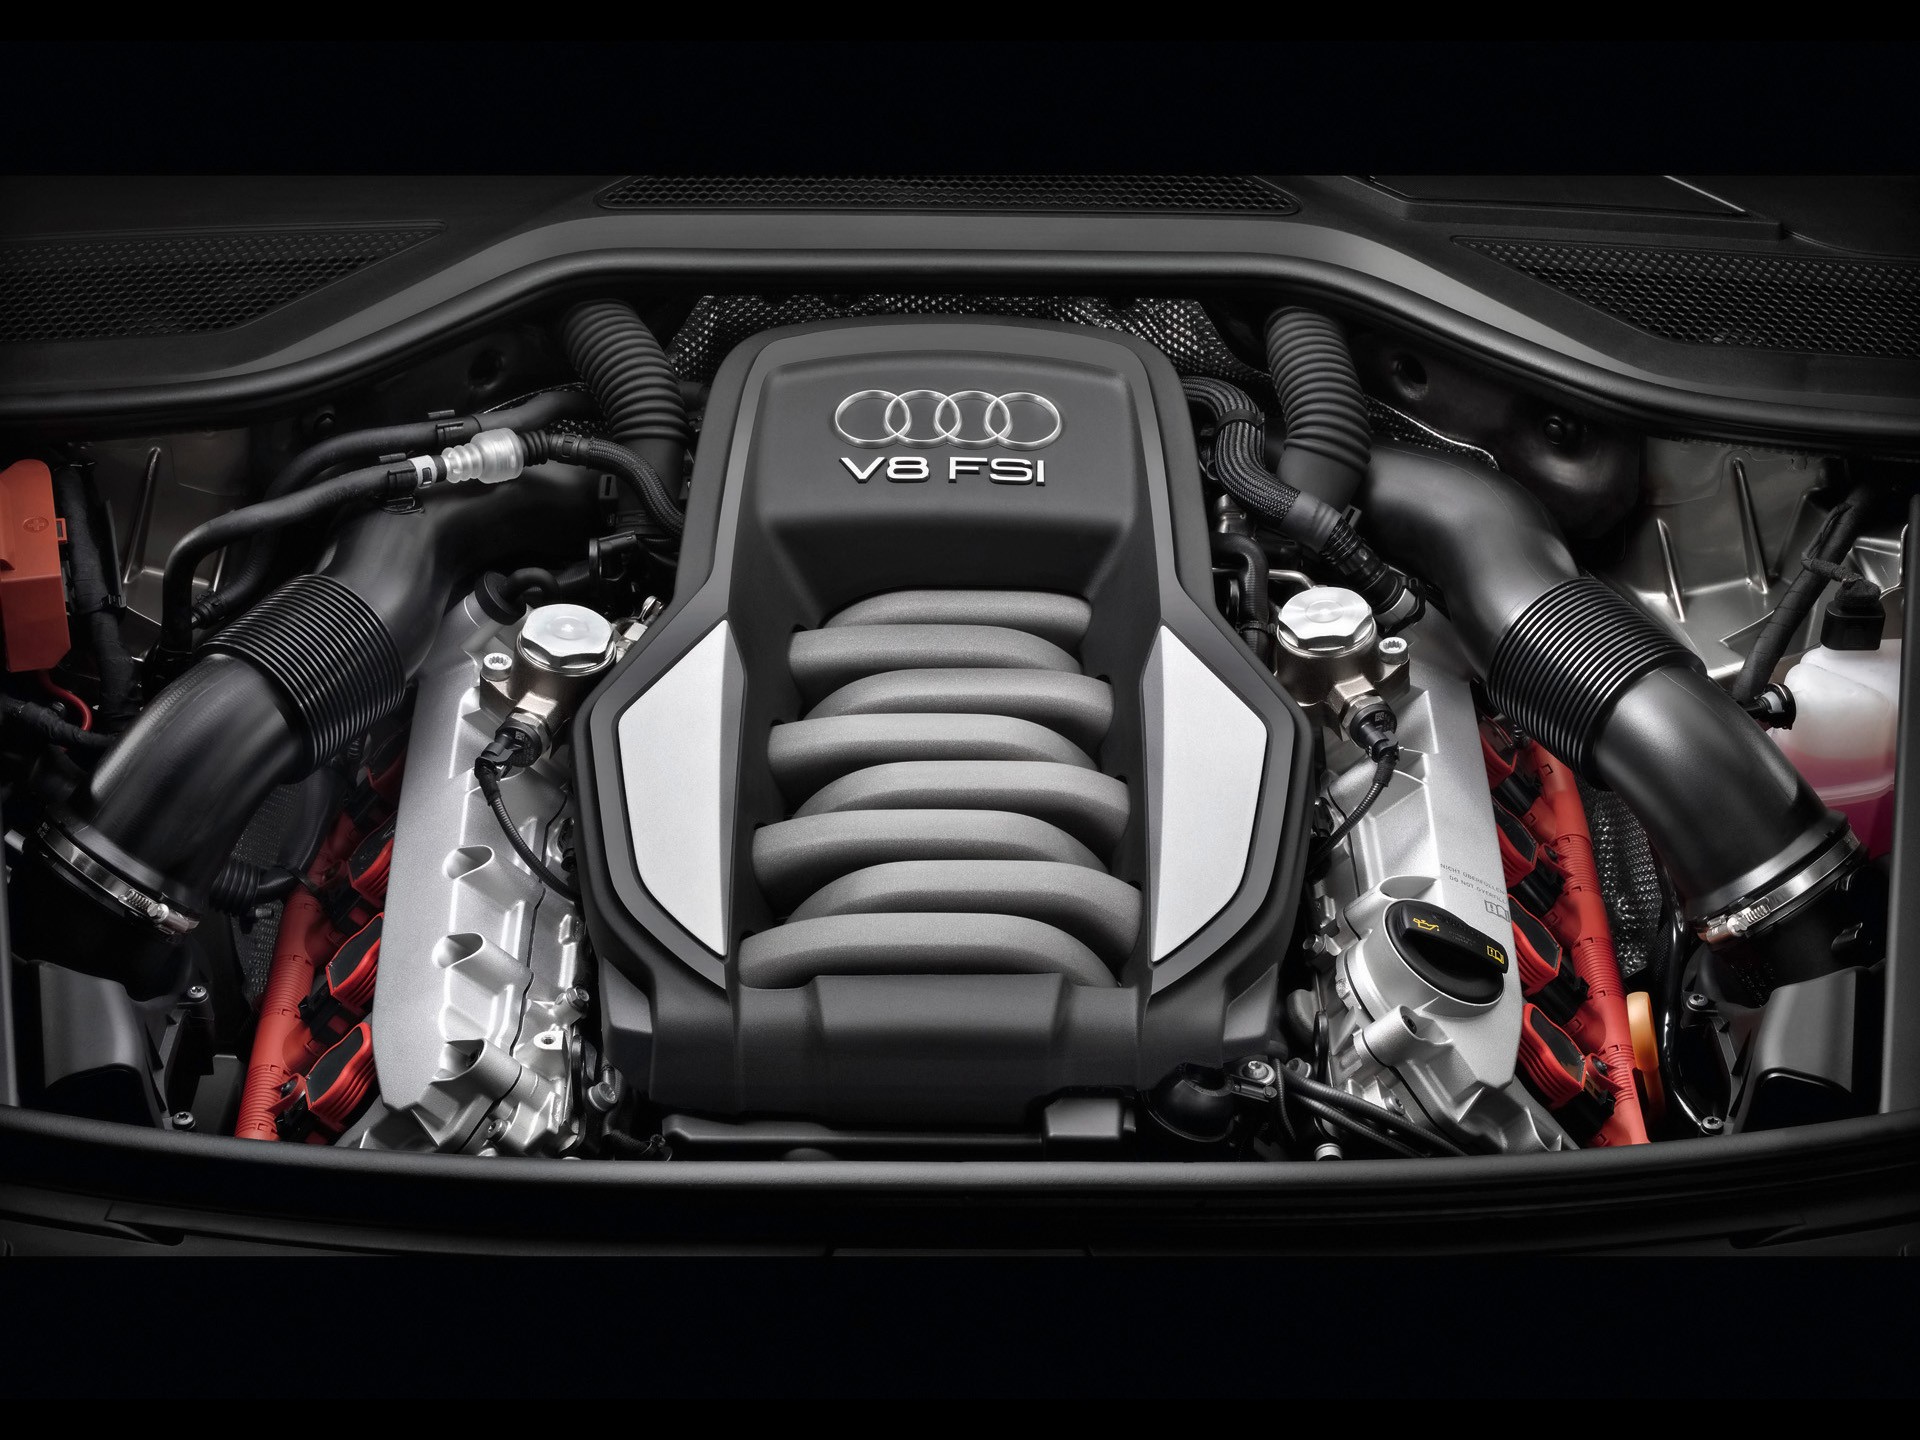 двигатели, Audi A8 - обои на рабочий стол